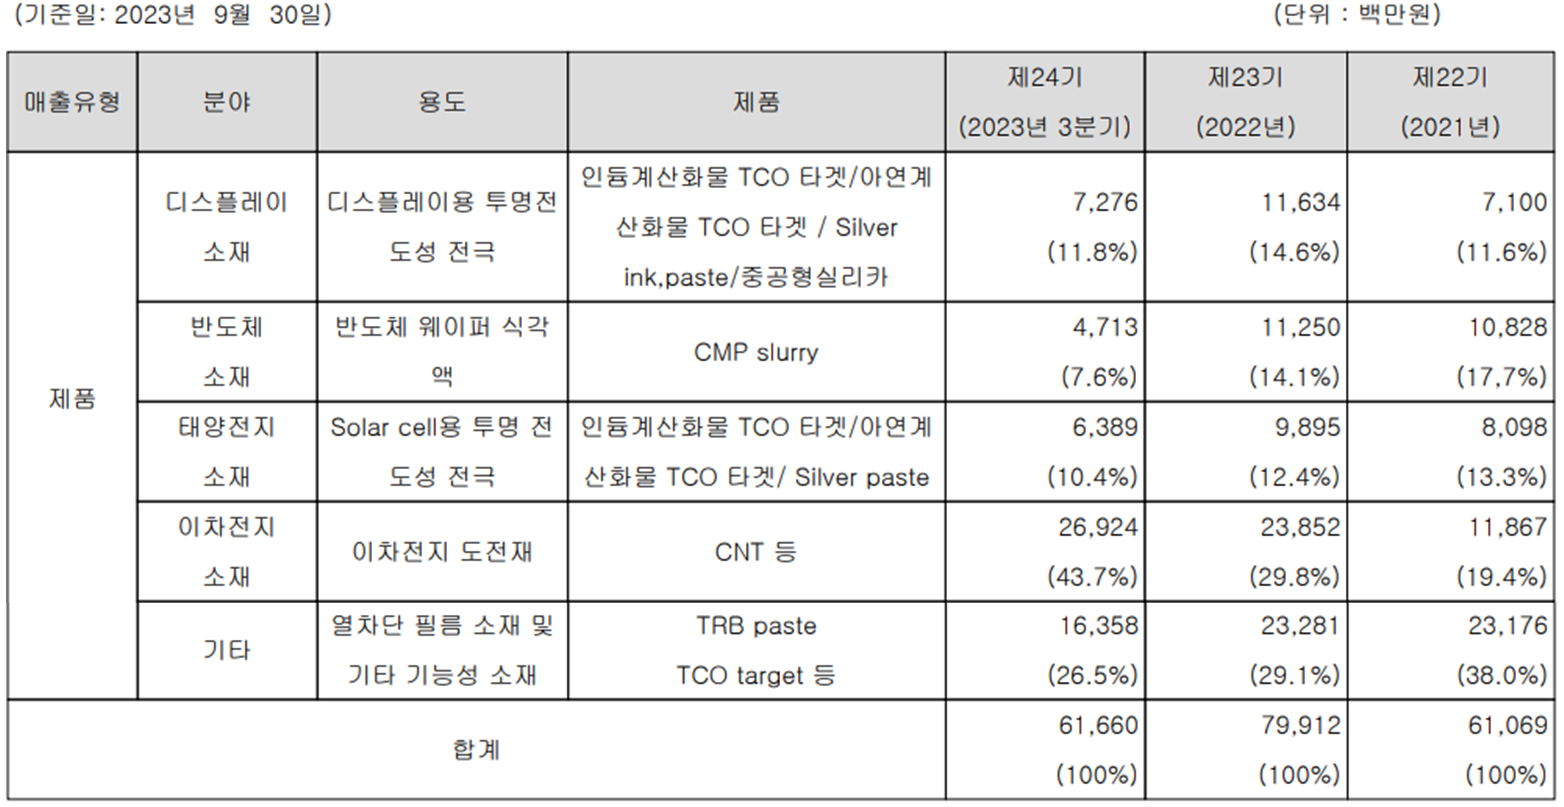 나노신소재 - 주요 사업 부문 및 제품 현황(2023년 3분기)